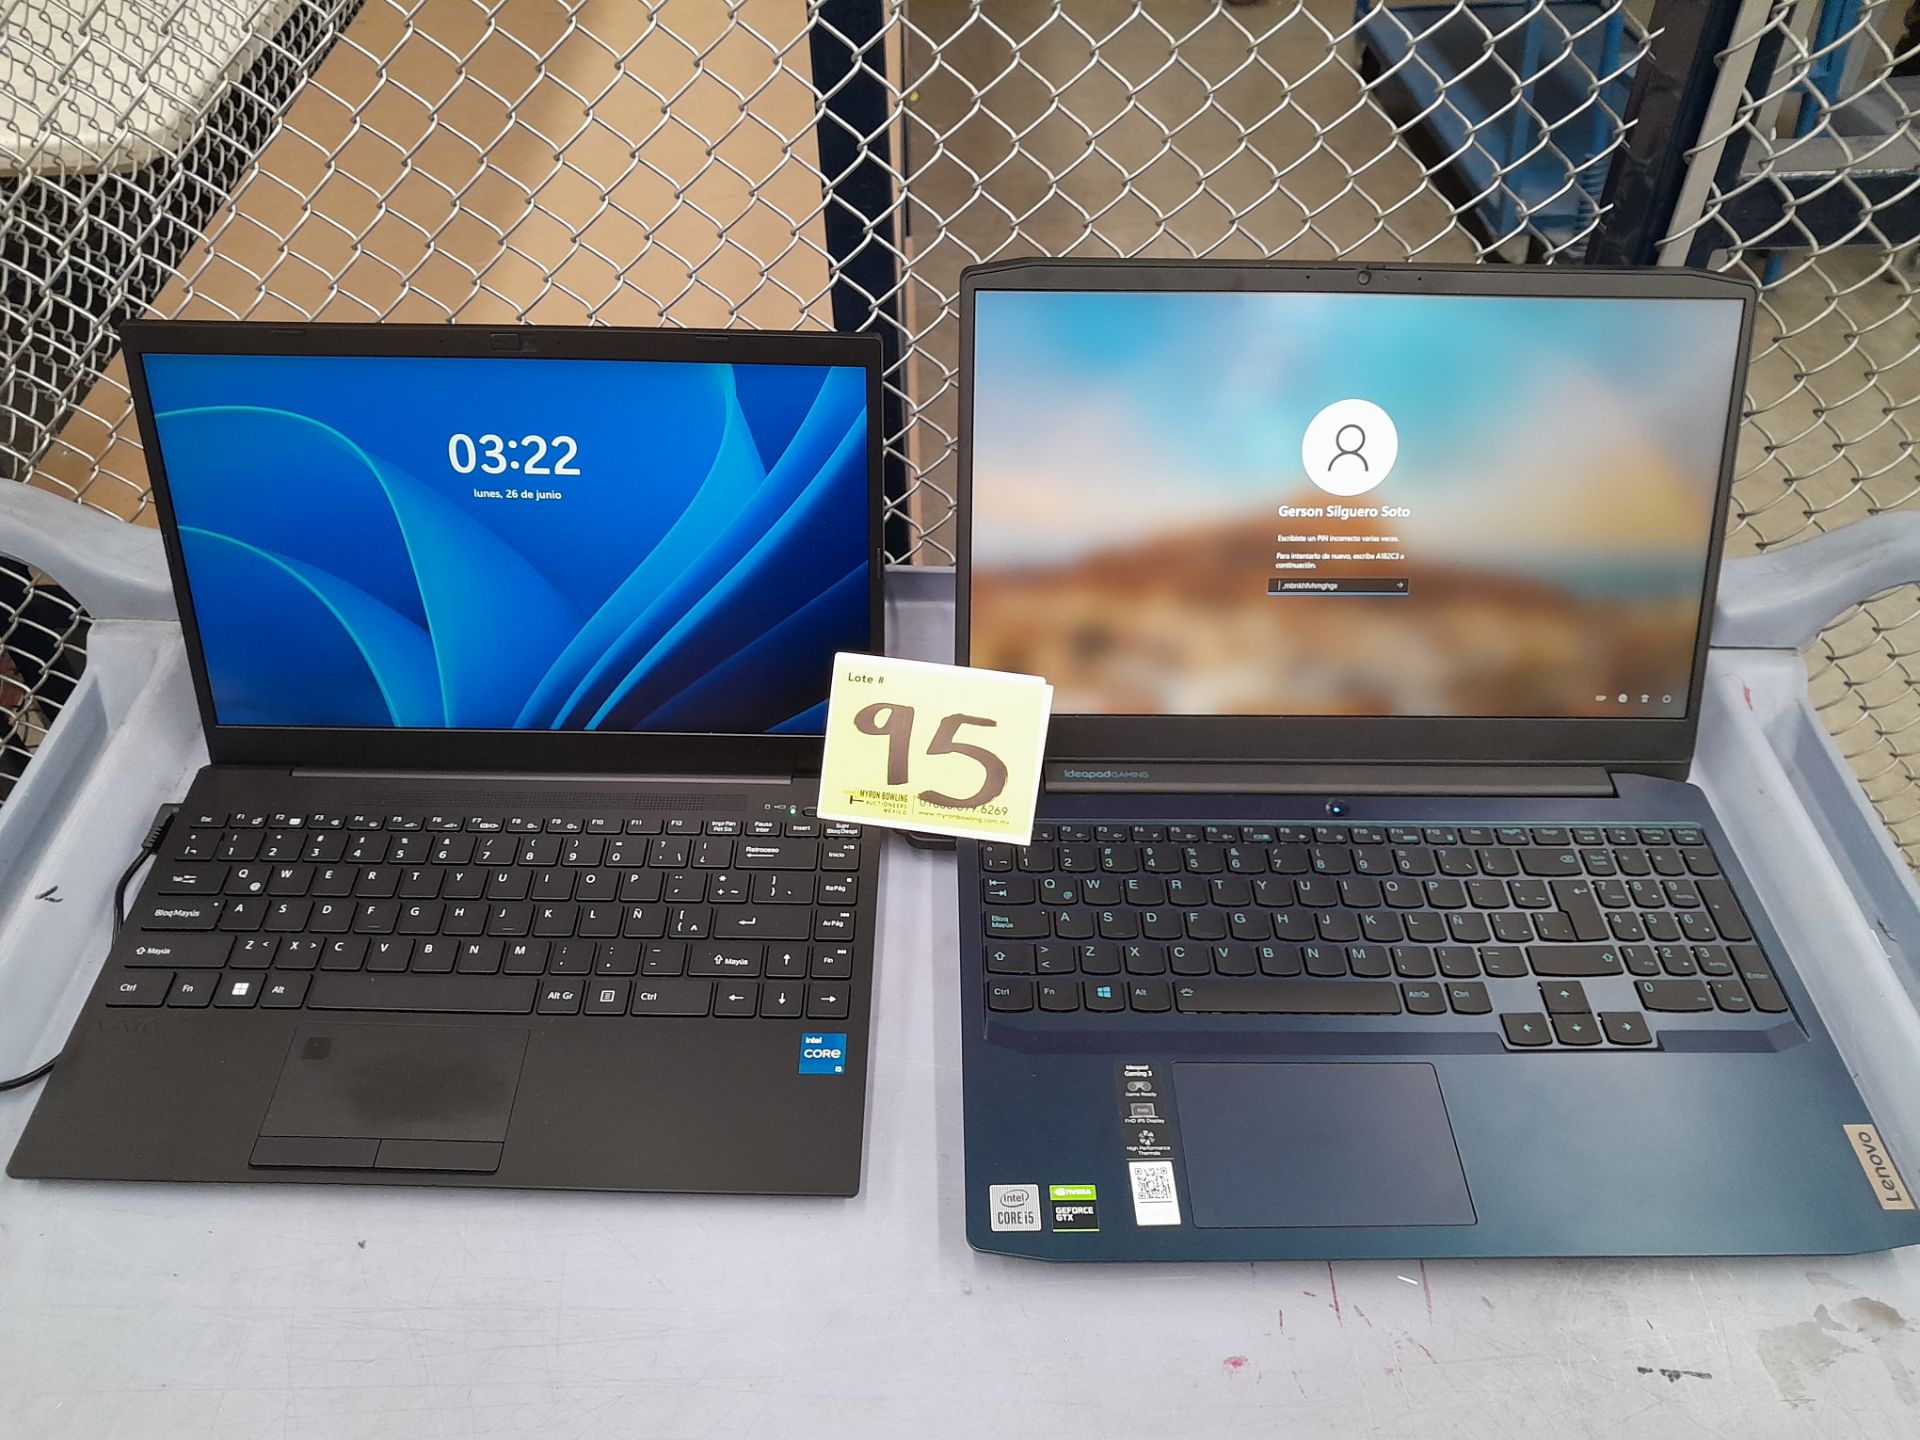 Lote de 2 laptops contiene: 1 Laptop Marca LENOVO, Modelo 81Y4, RAM 8GB, almacenamiento 1 TB, Proce - Image 3 of 13